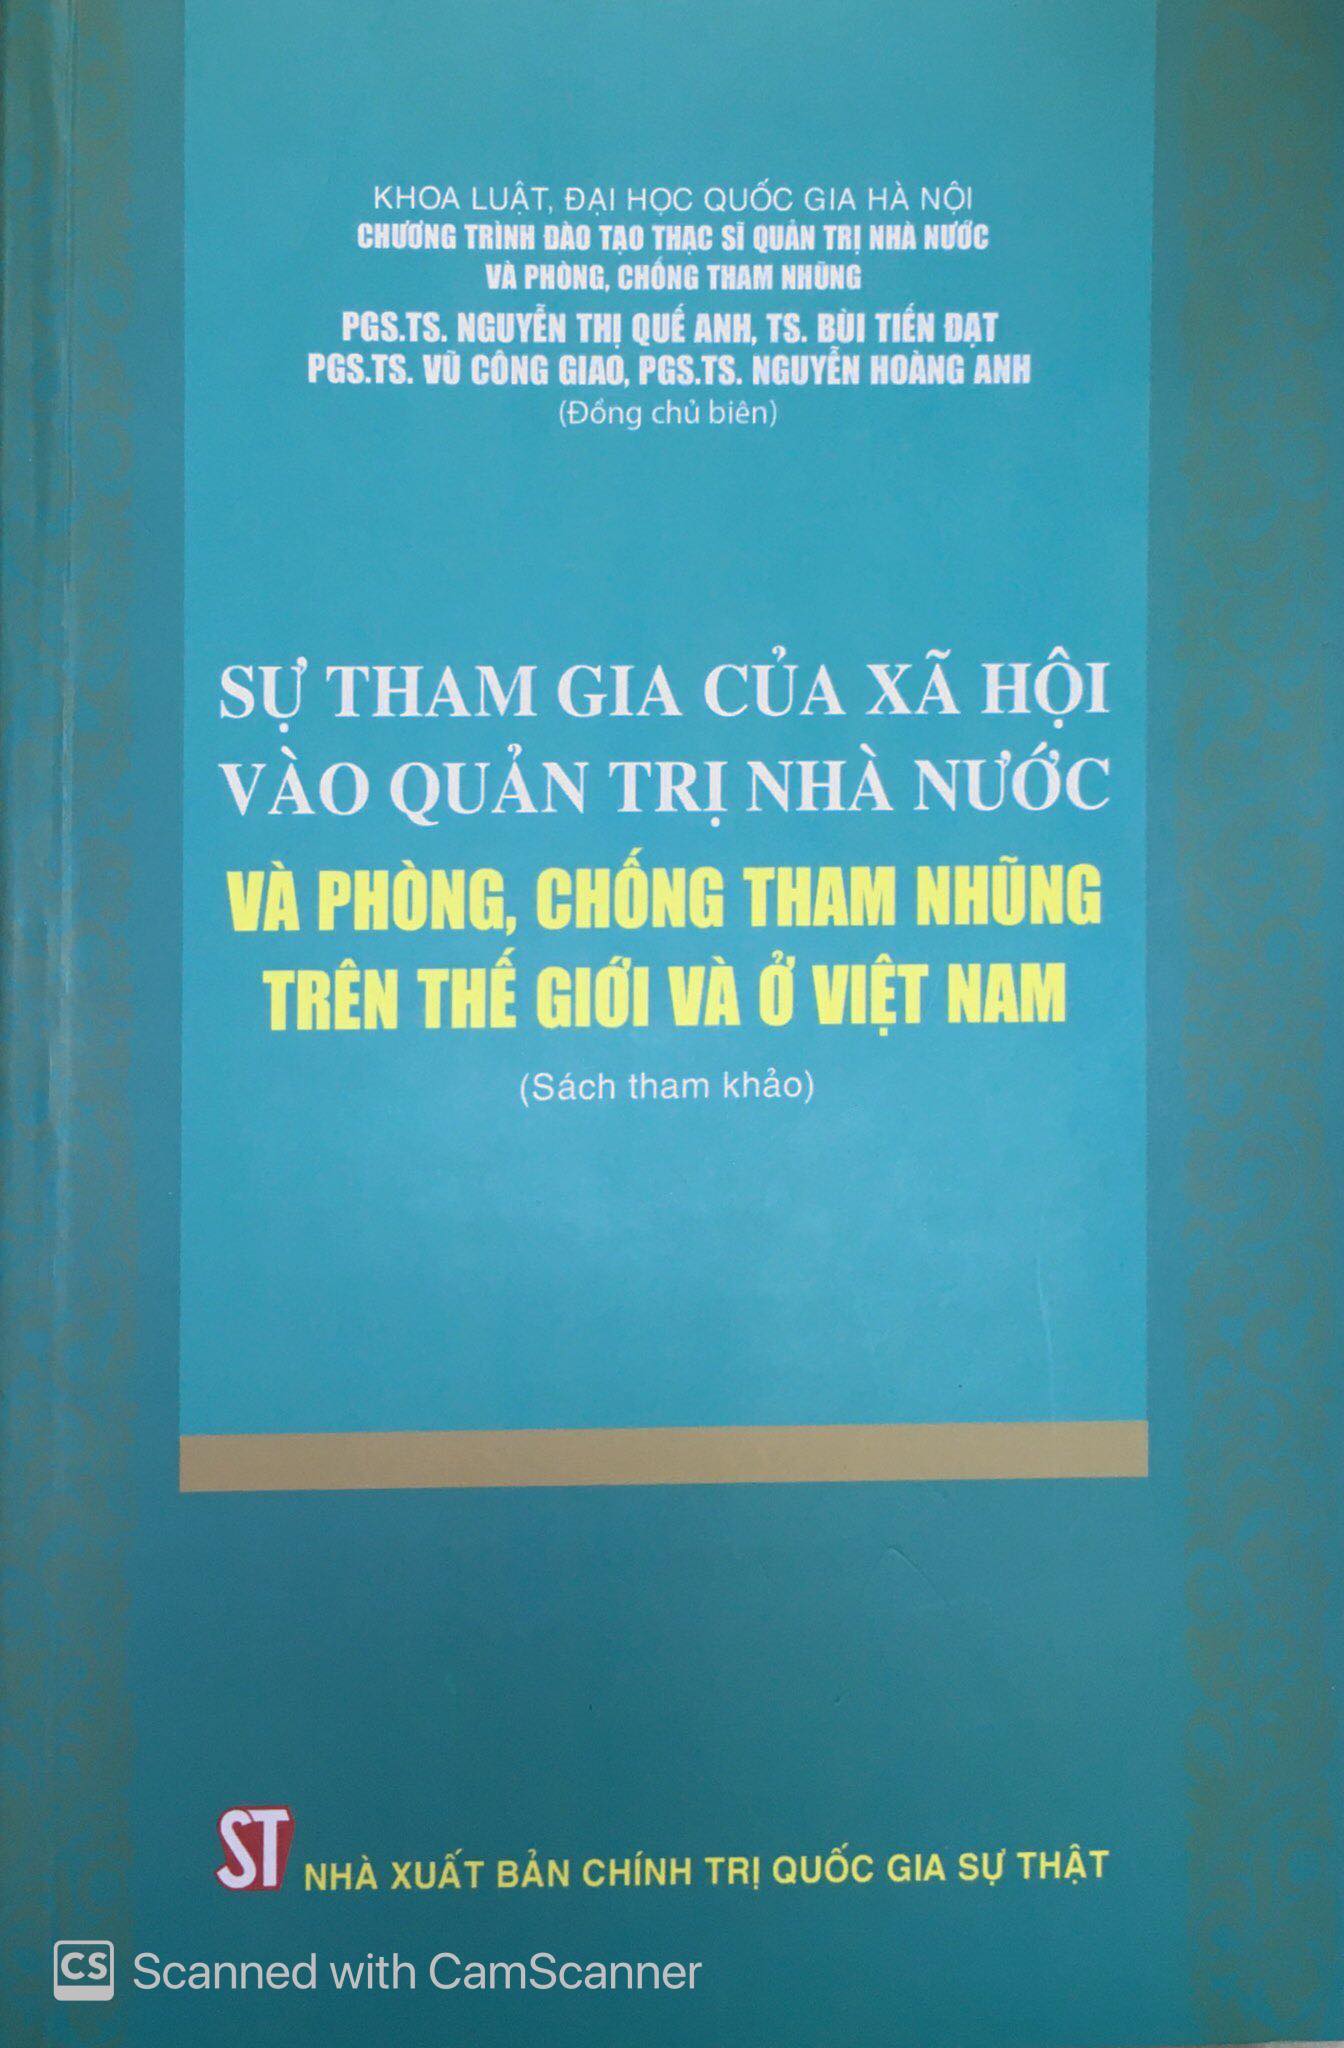 Sự tham gia của xã hội vào quản trị nhà nước và phòng, chống tham nhũng trên thế giới và ở Việt Nam (Sách tham khảo)